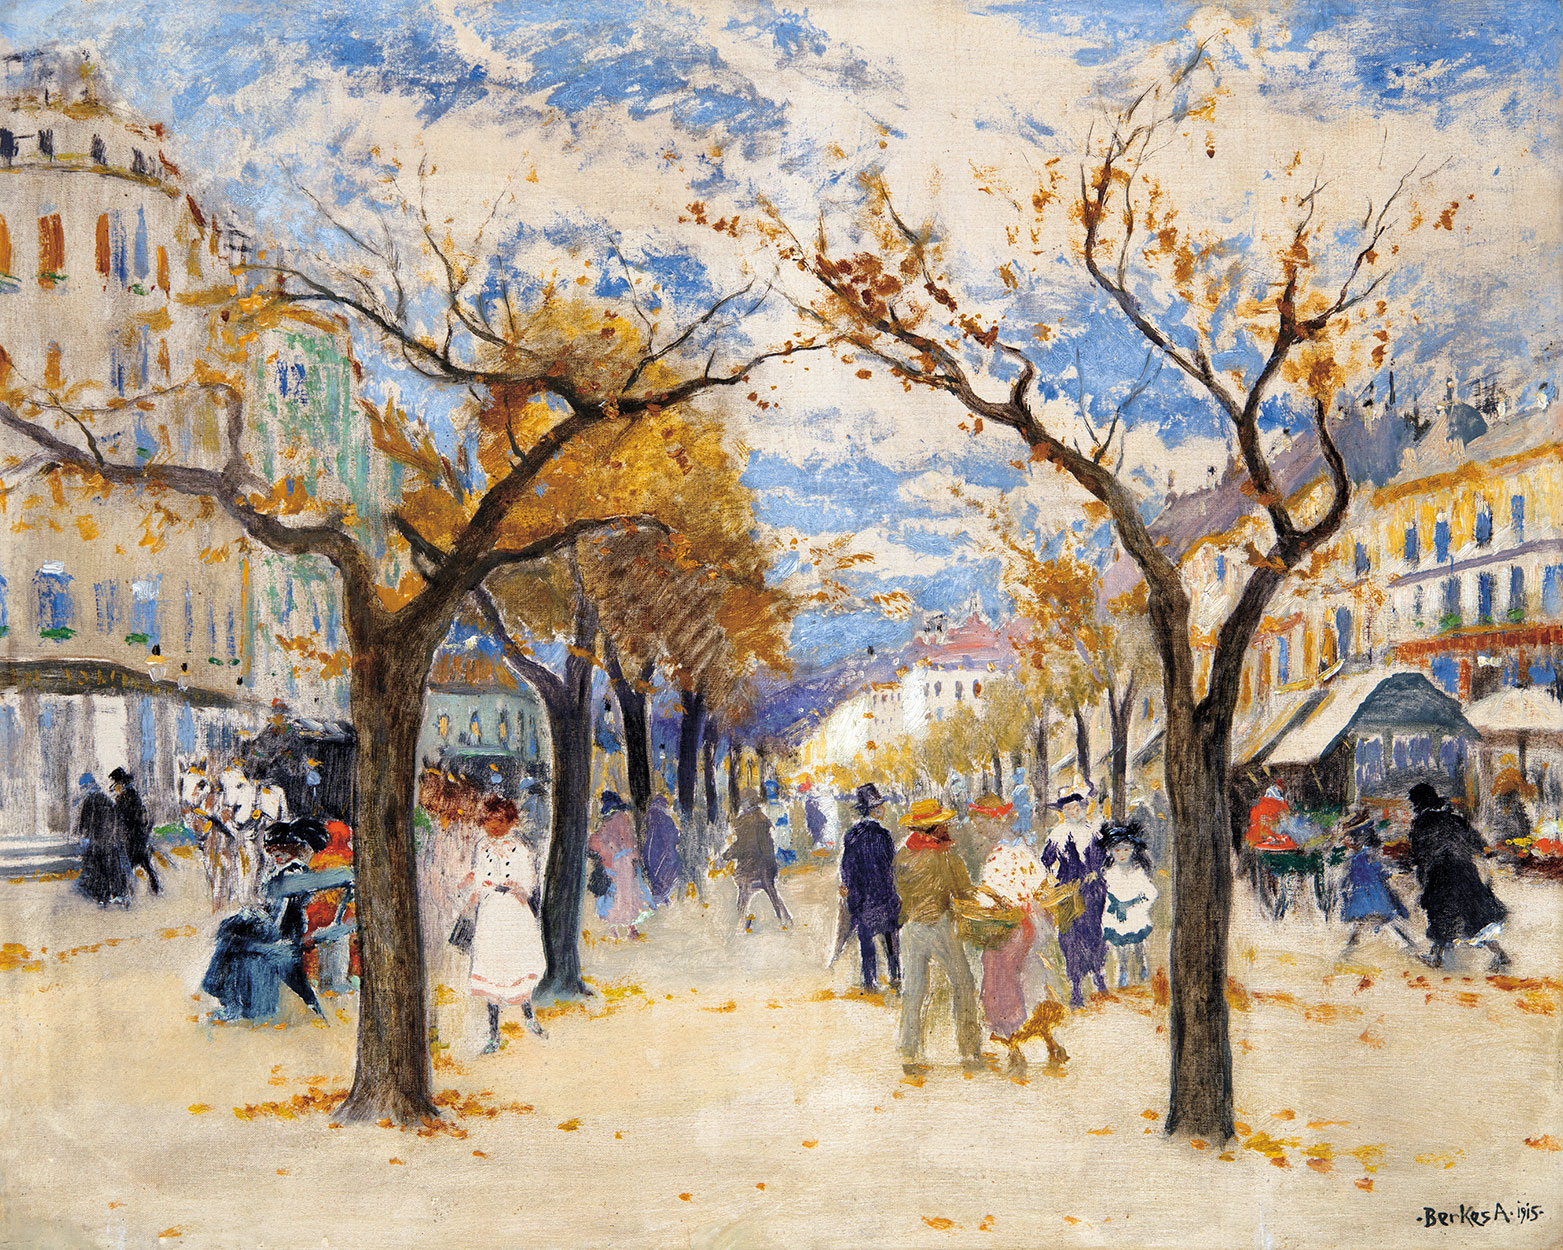 Berkes Antal (1874-1938) Parisian Street, 1915